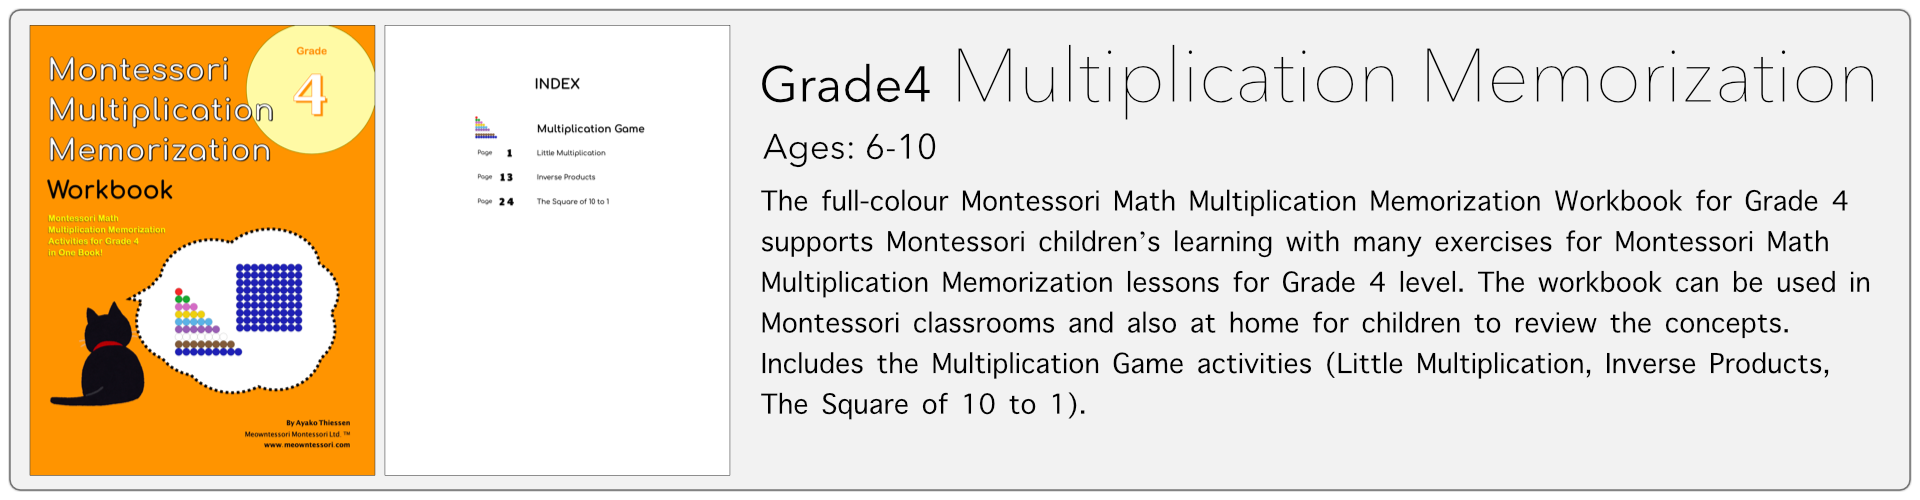 grade4 multiplication memorization